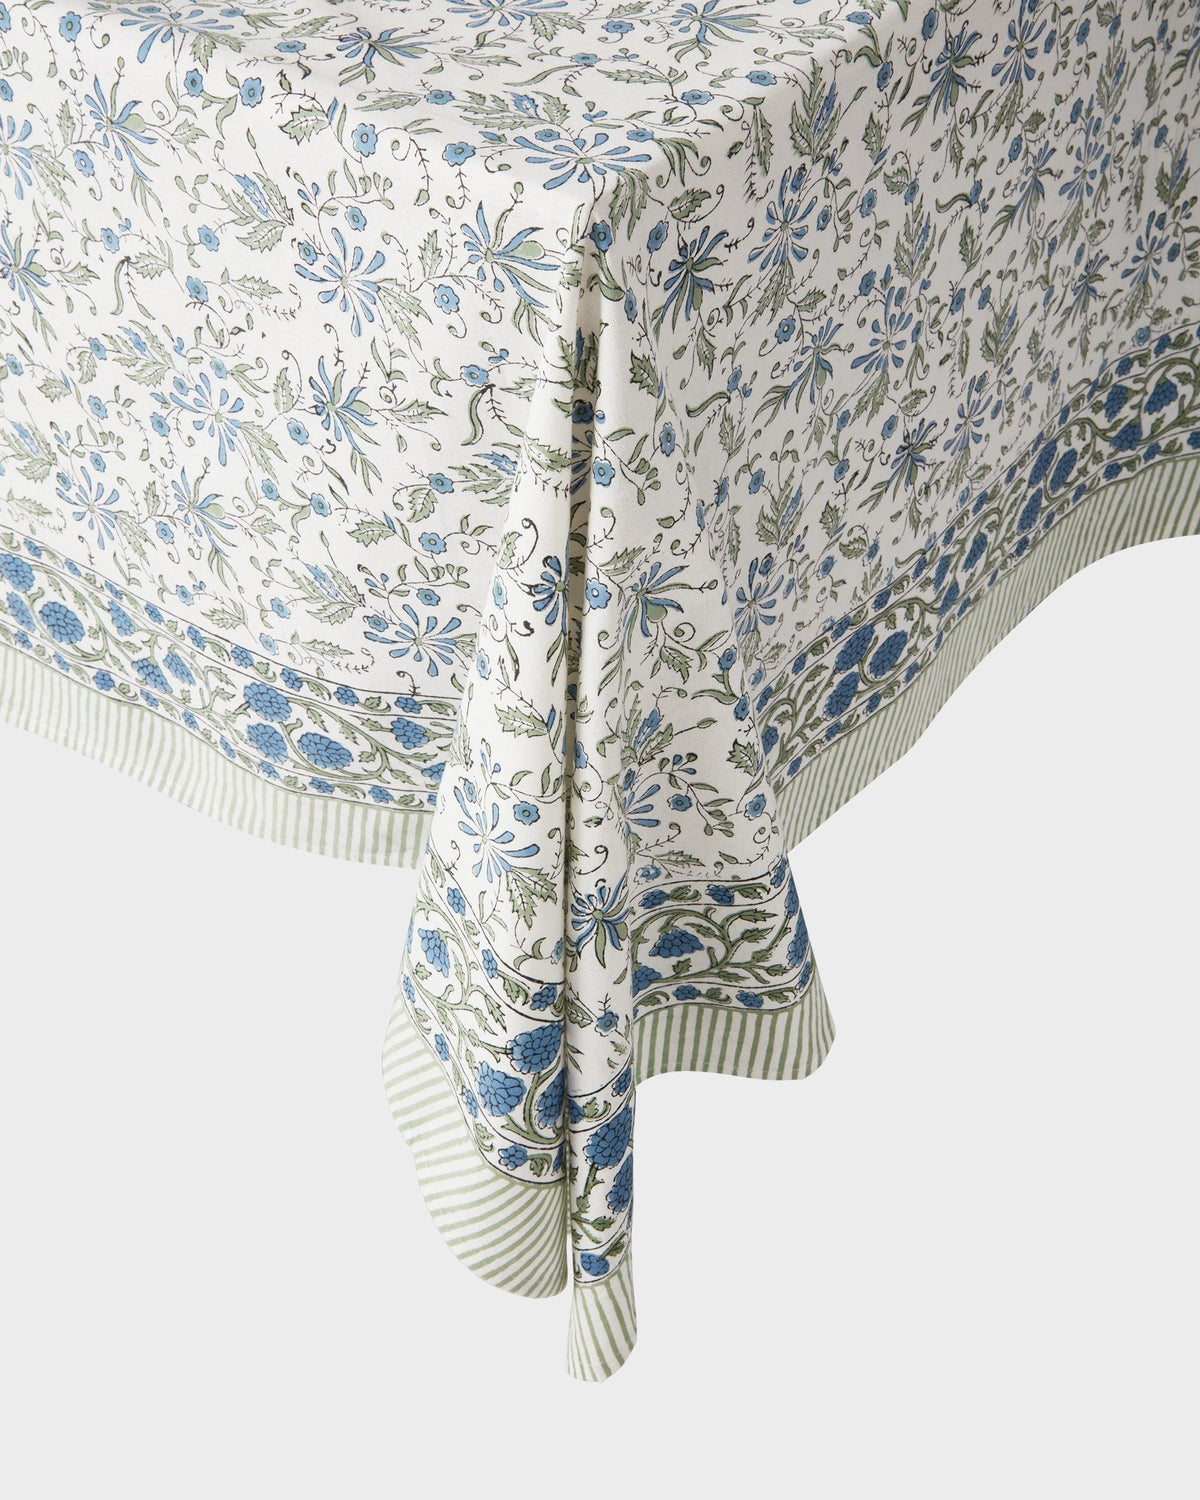 Von Home's Block Print Tablecloth - Blue flowers - Von Home